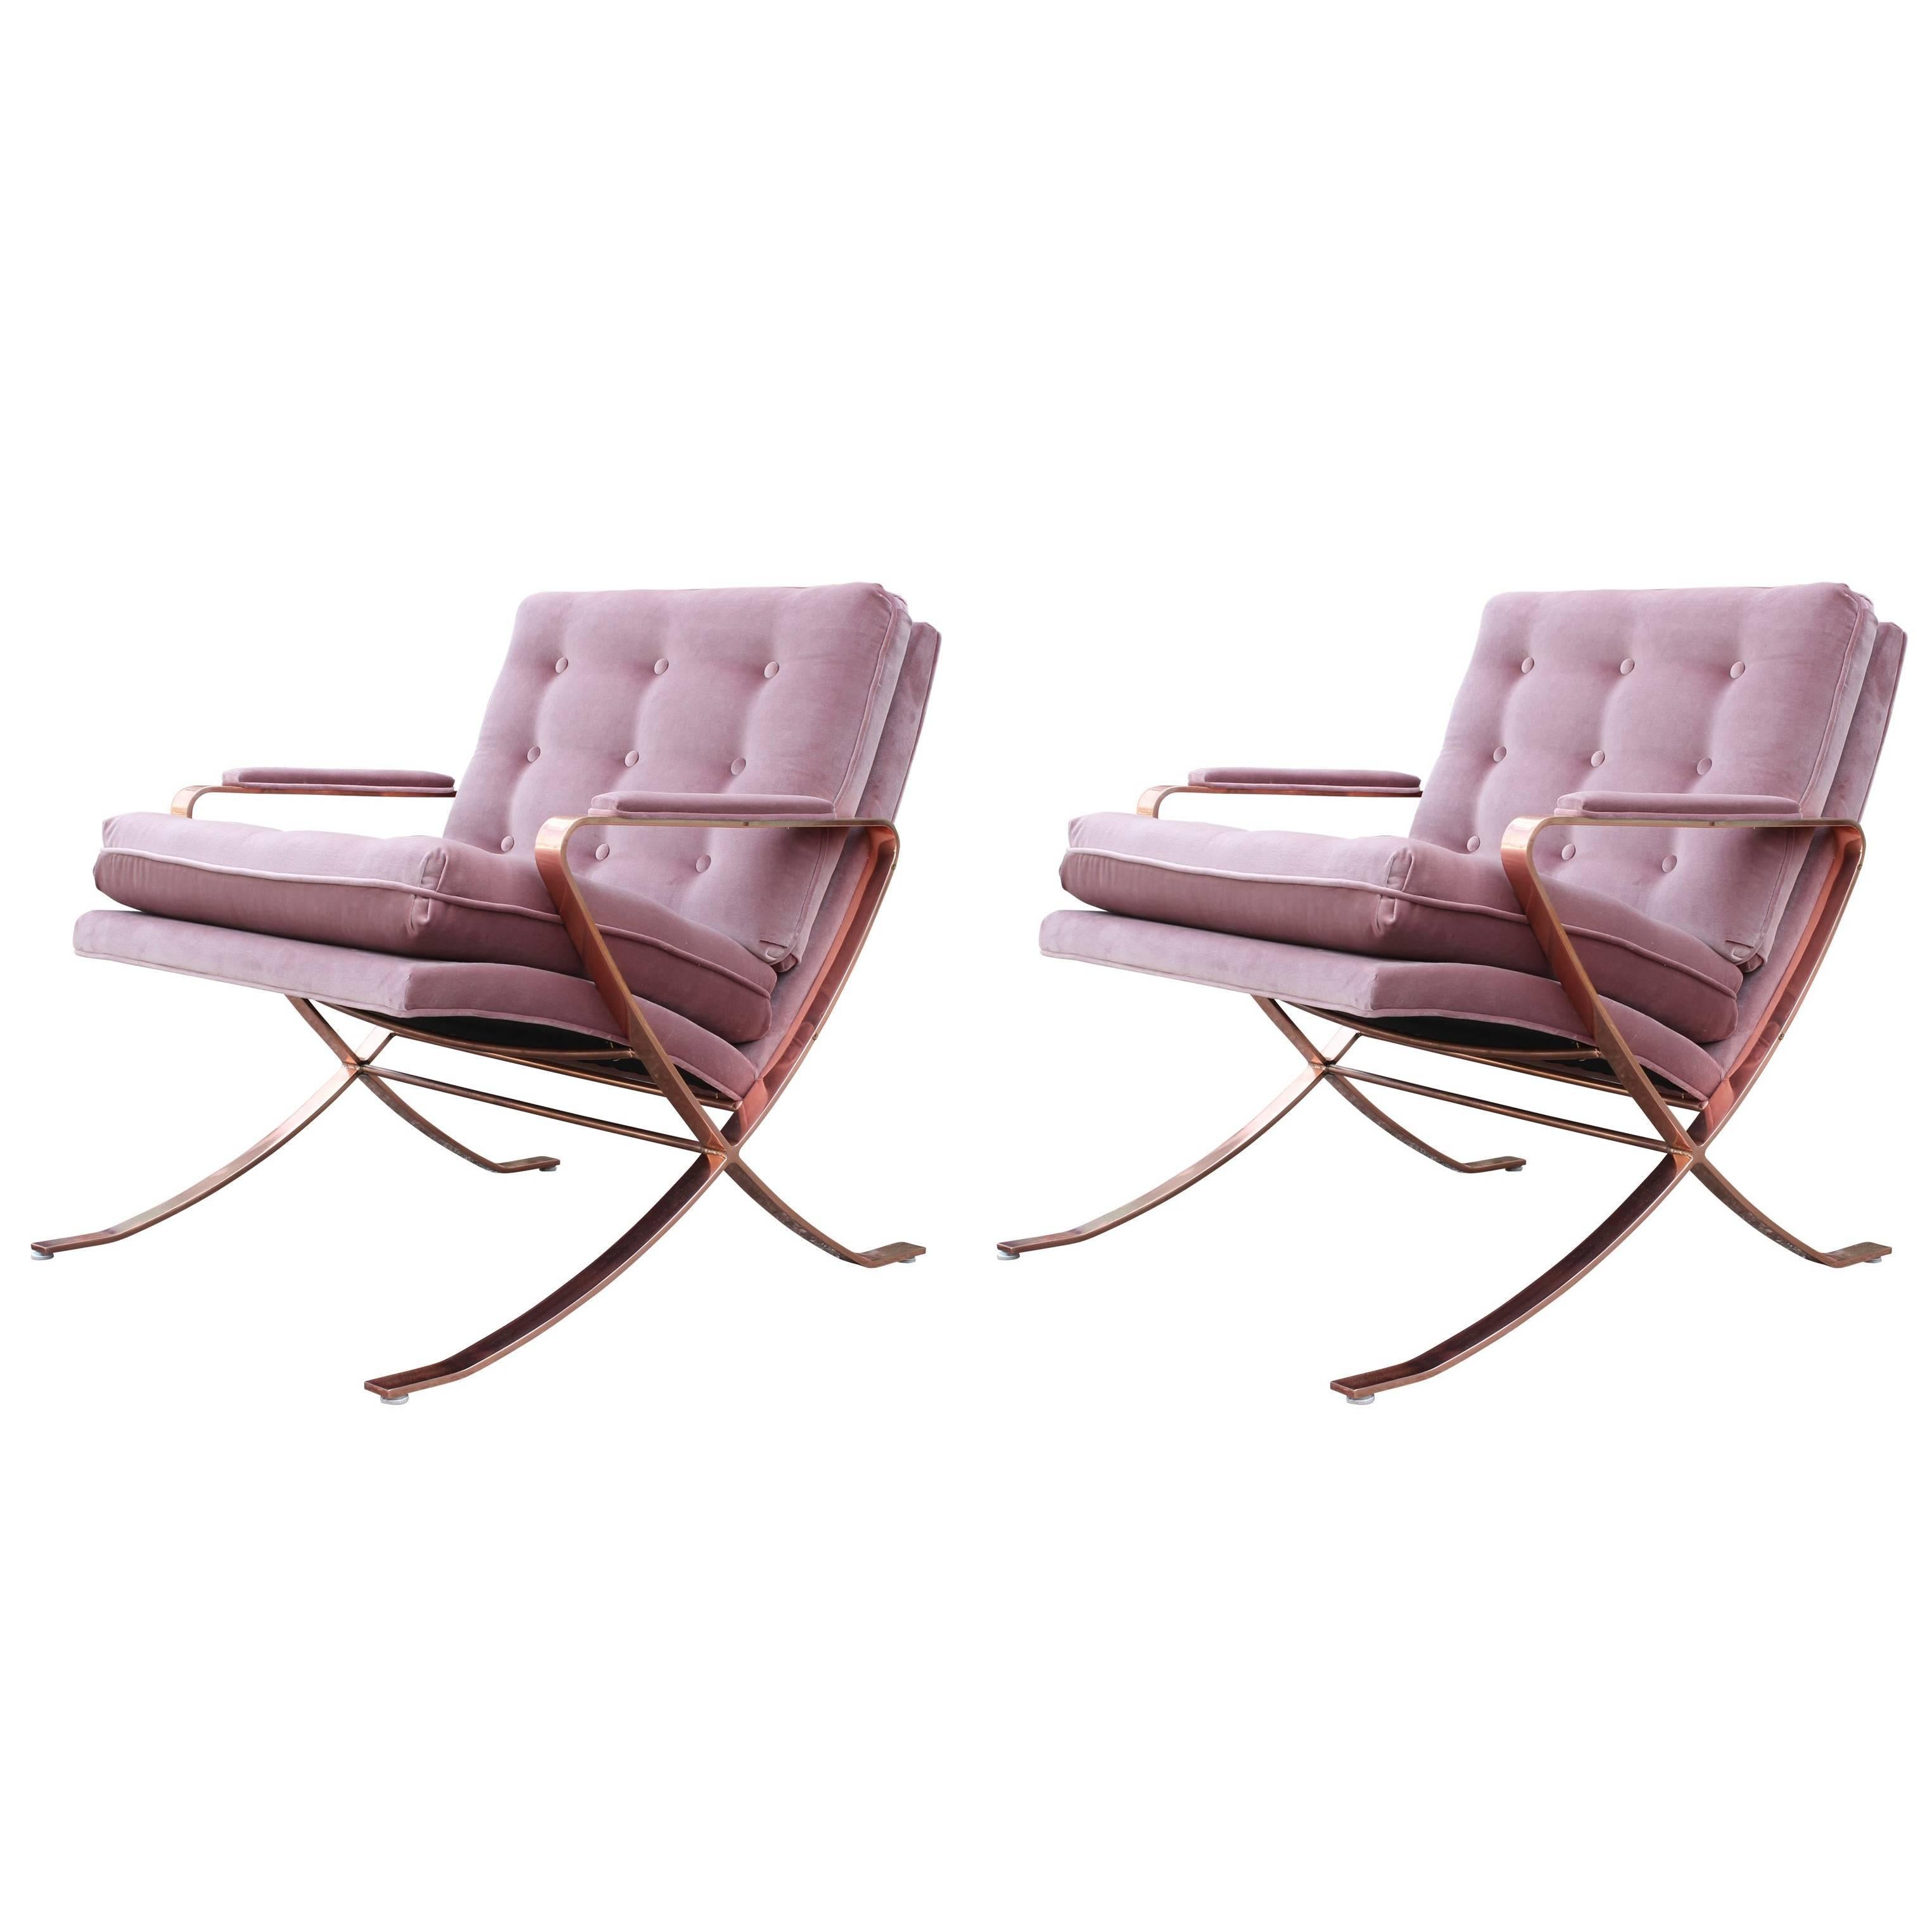 Pair of Modern Italian Copper-Plated Lounge Chairs in Tufted Mauve Kravet Velvet